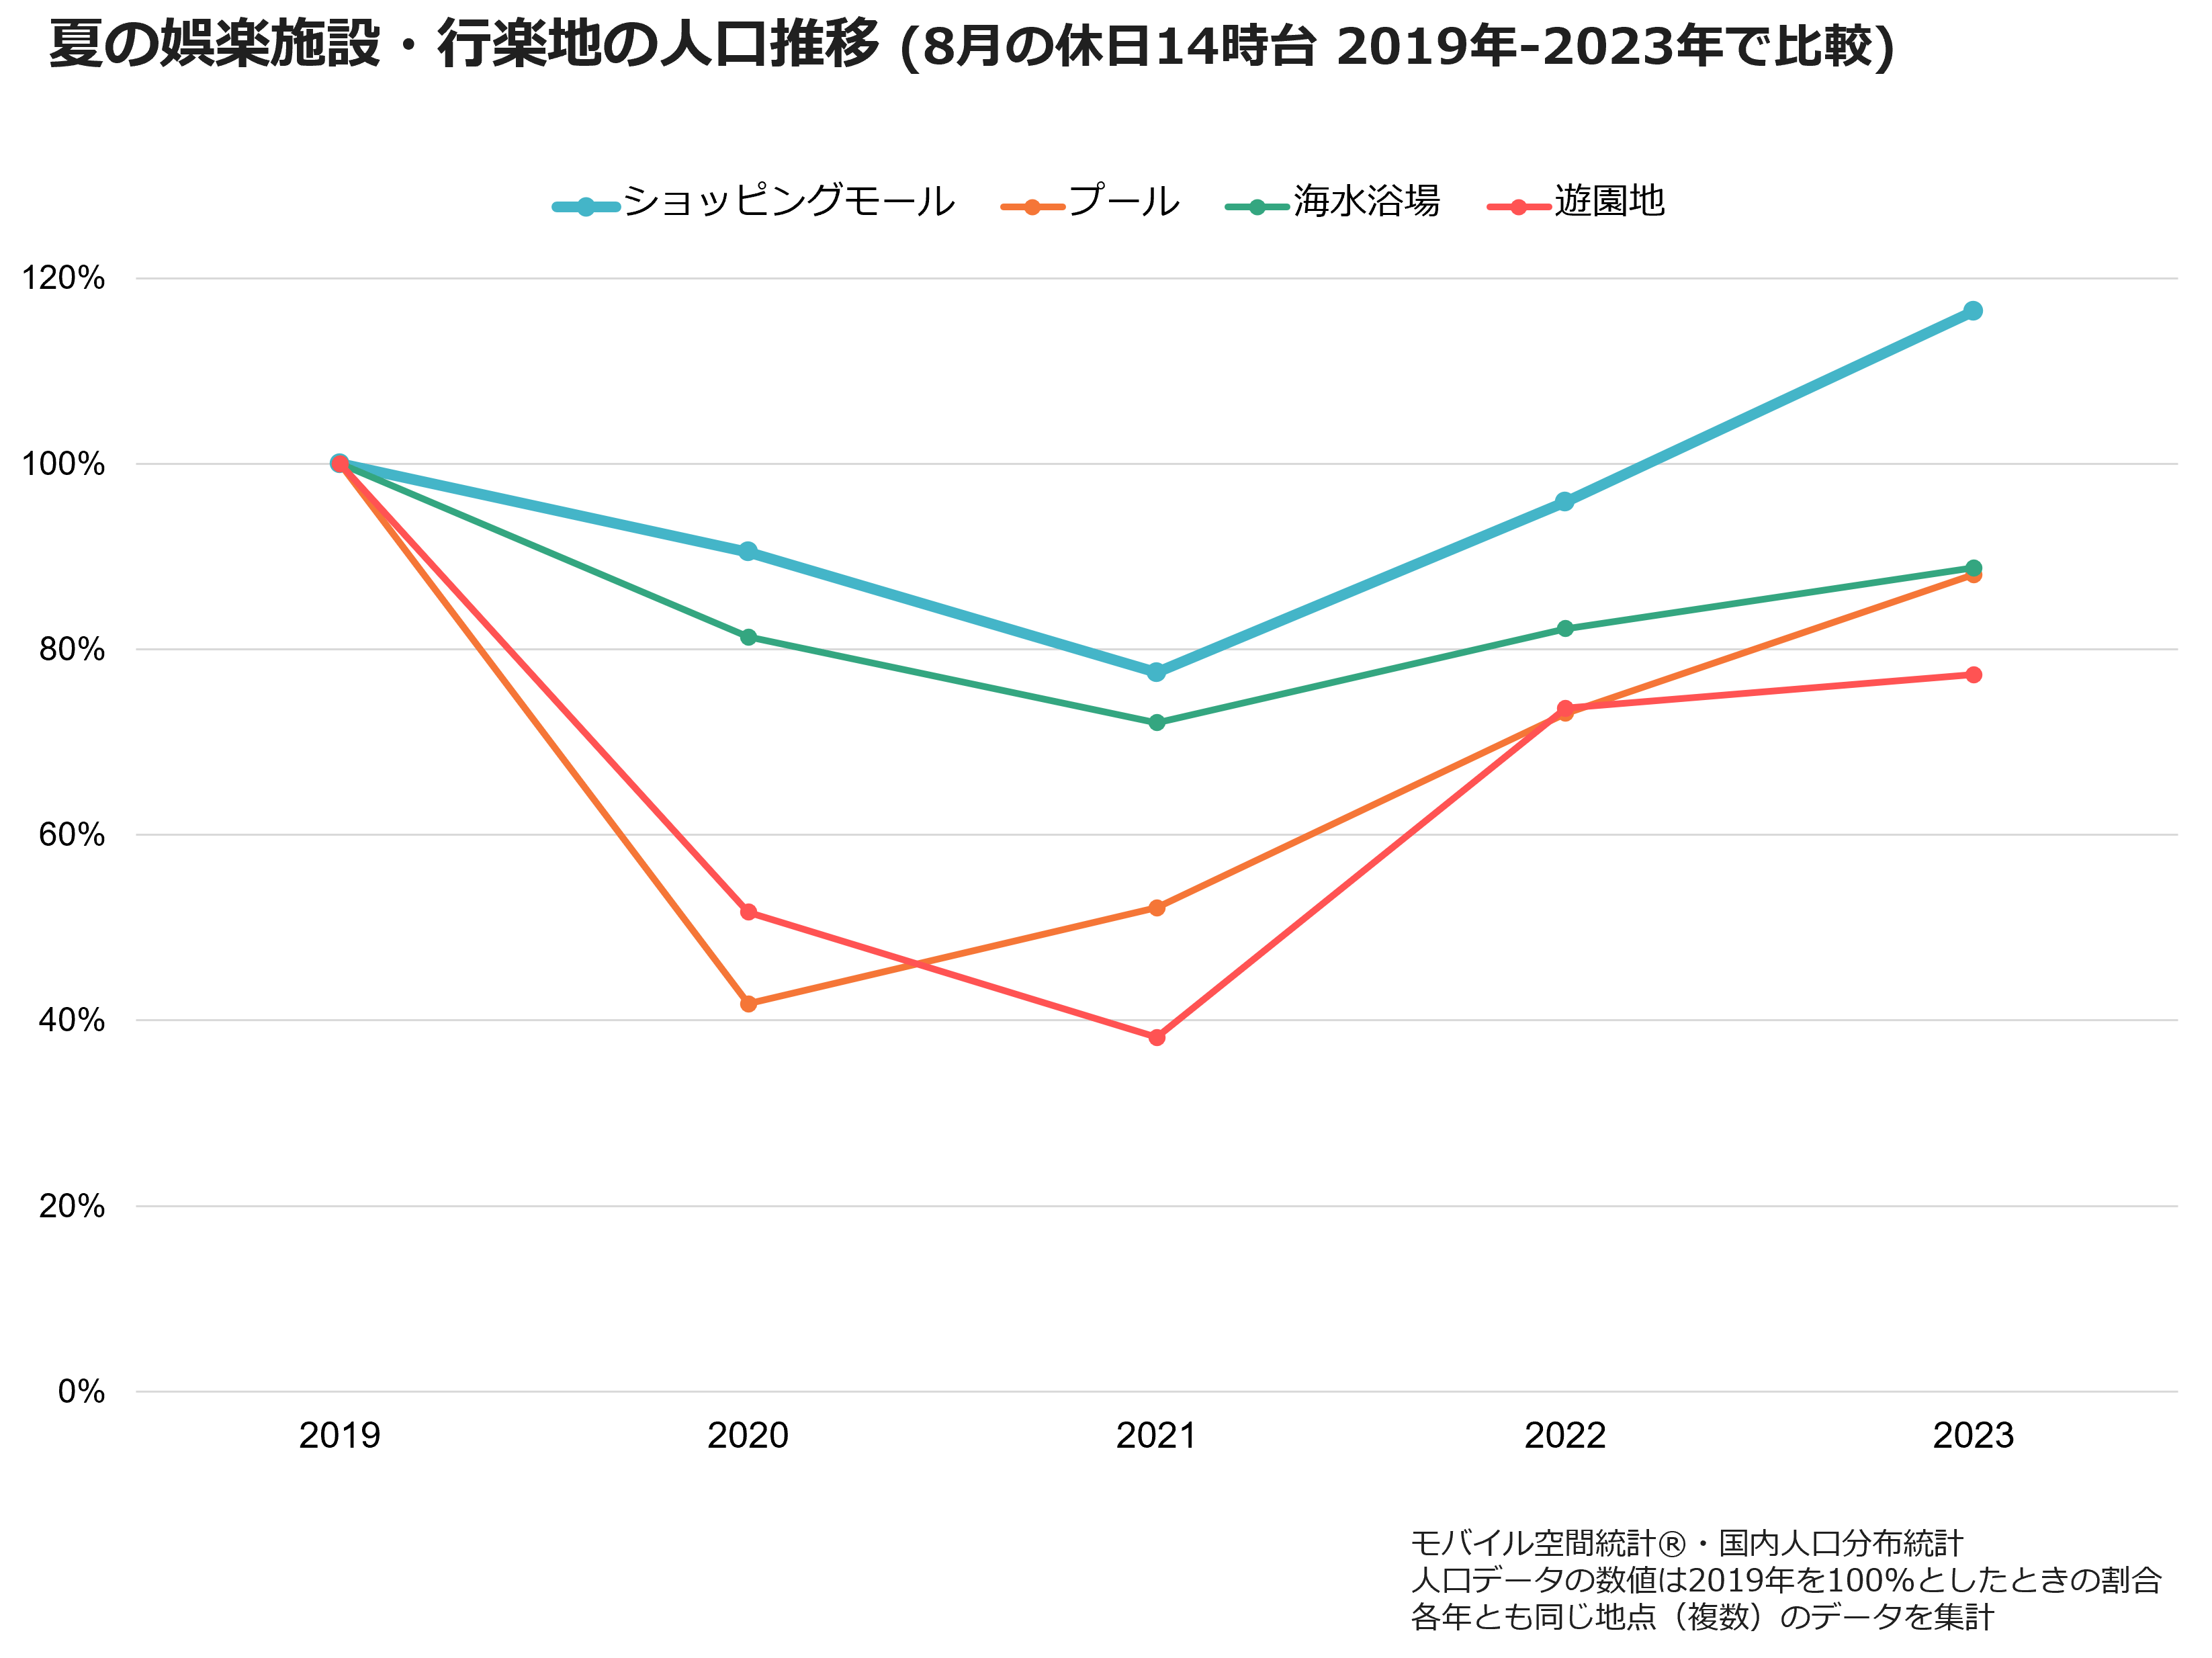 夏の娯楽施設・行楽地の人口推移（8月の休日14時台 2019年-2023年で比較）